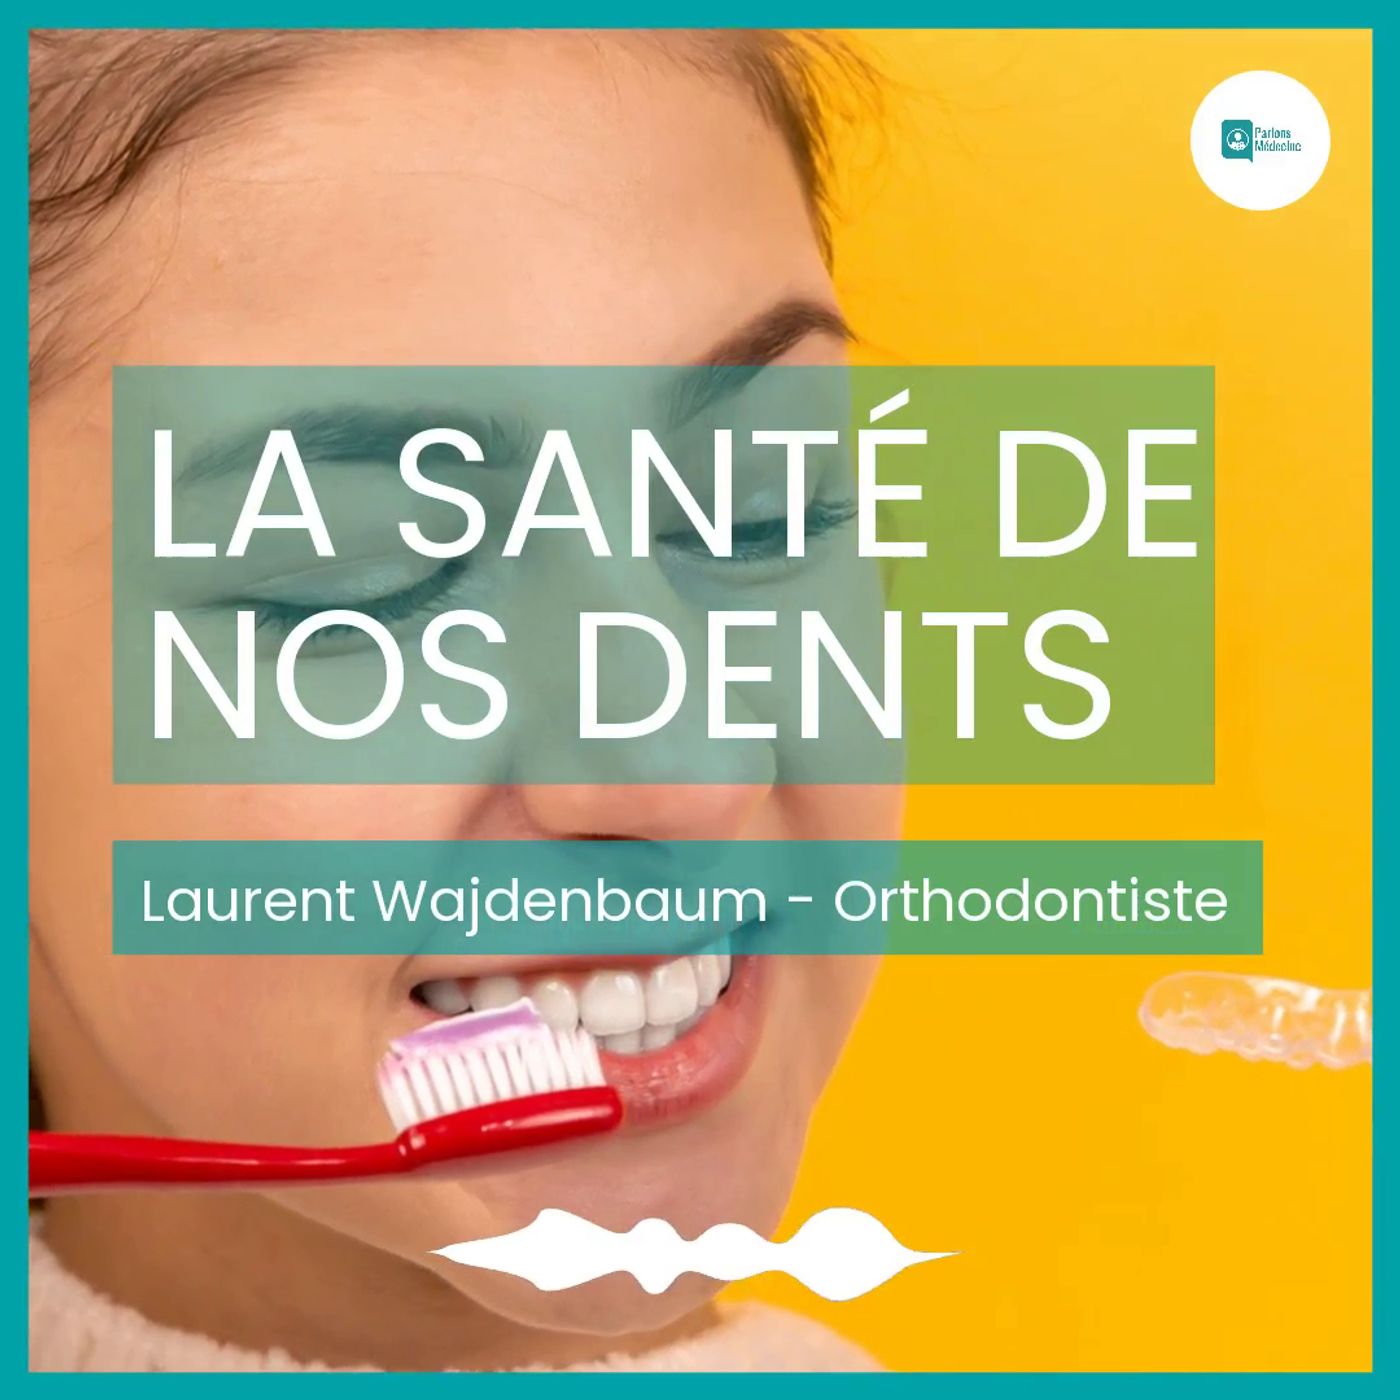 La santé de nos dents - Laurent Wajdenbaum - Orthodontiste